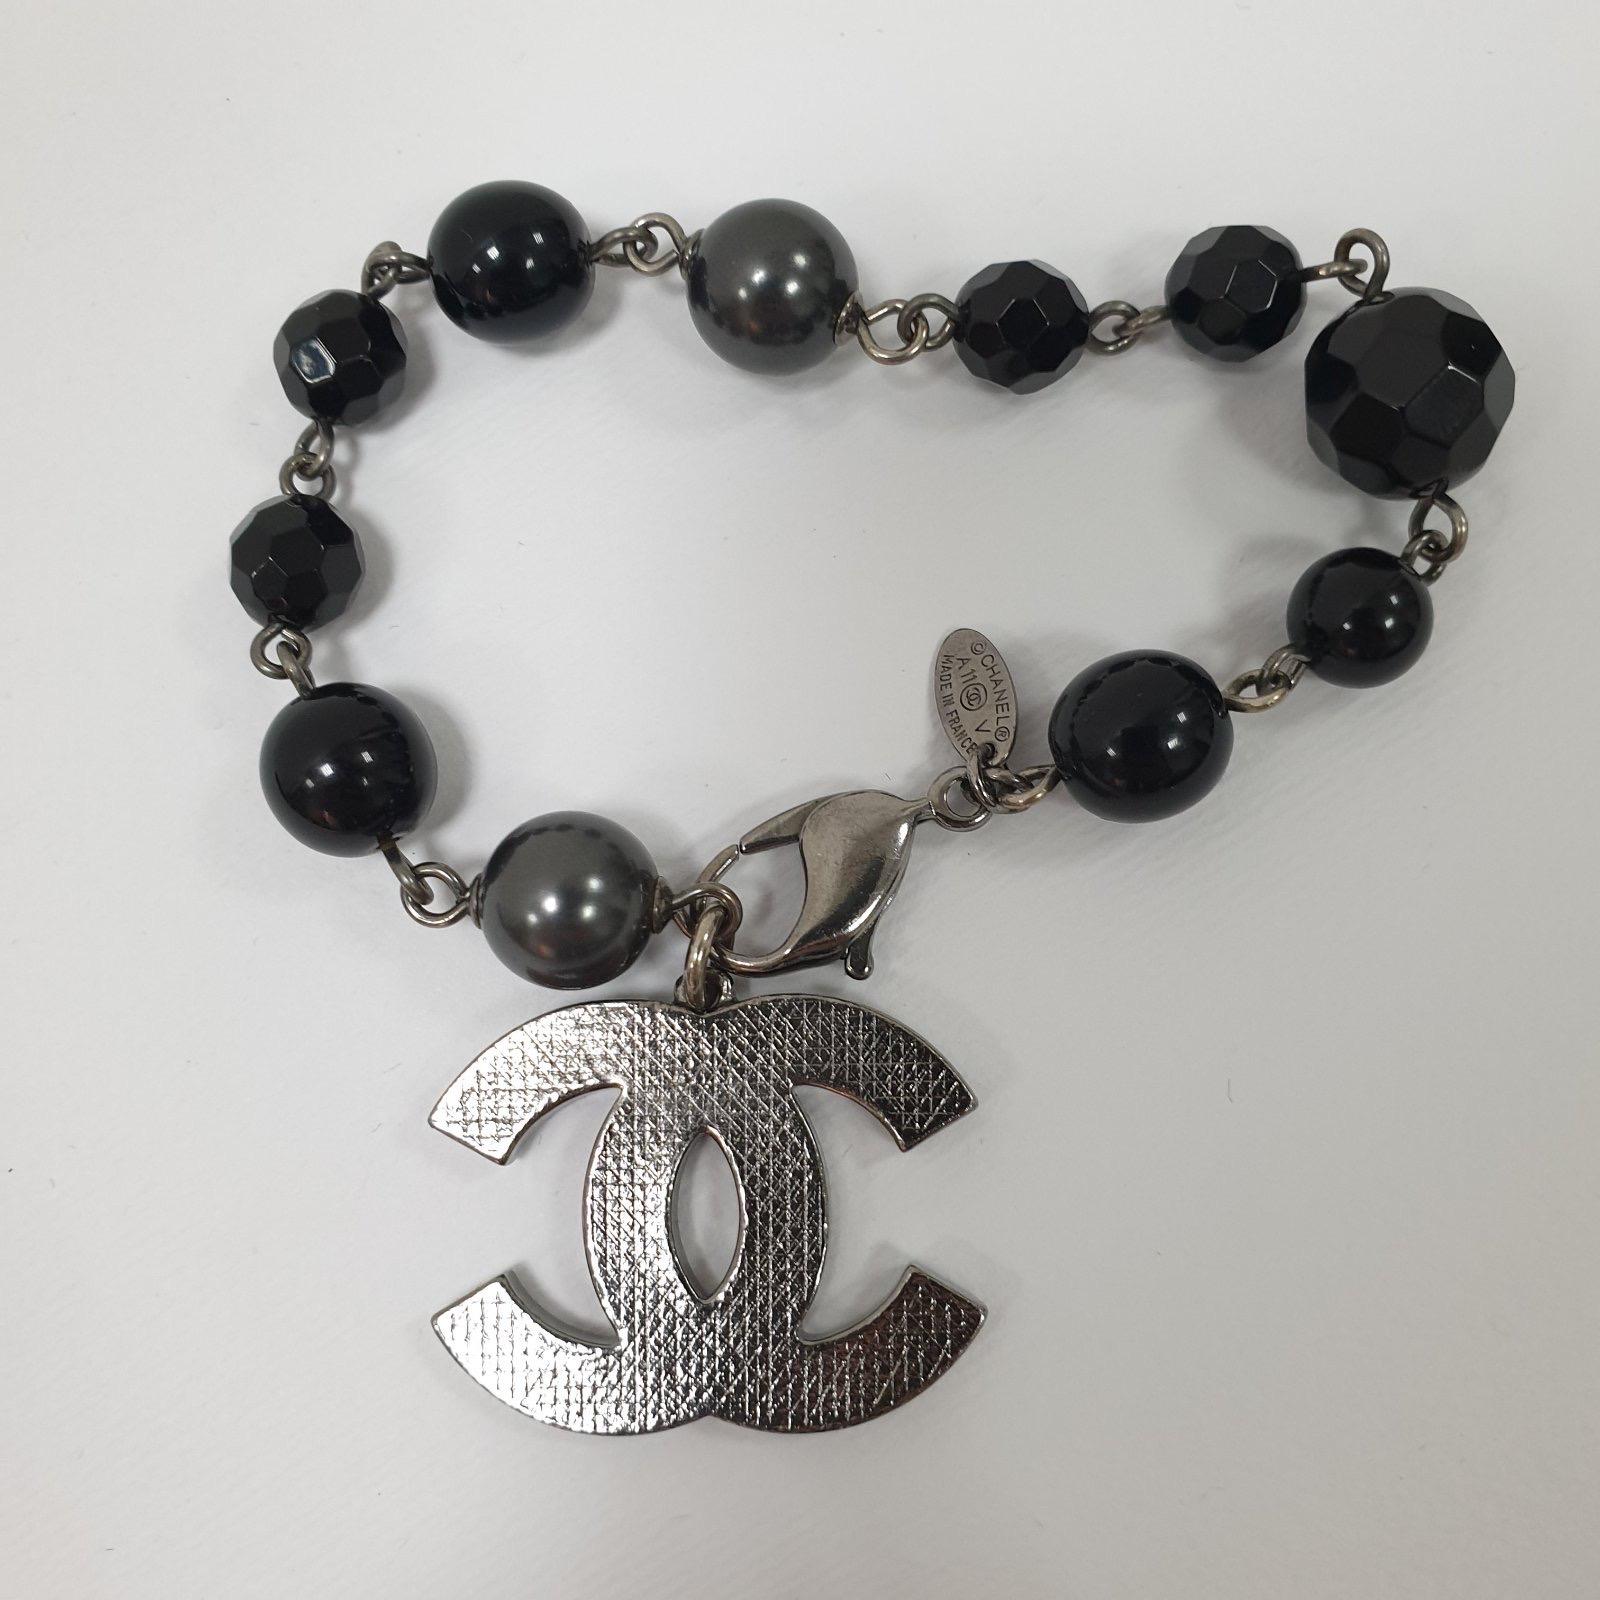 Herbst 2011
Dieses Chanel-Armband aus silberfarbenem Metall ist niedlich und zierlich. Es besteht aus schwarzen und grauen Perlen, die mit einem ineinandergreifenden CC-Charme kombiniert sind. Sie ist mit einem Karabinerverschluss